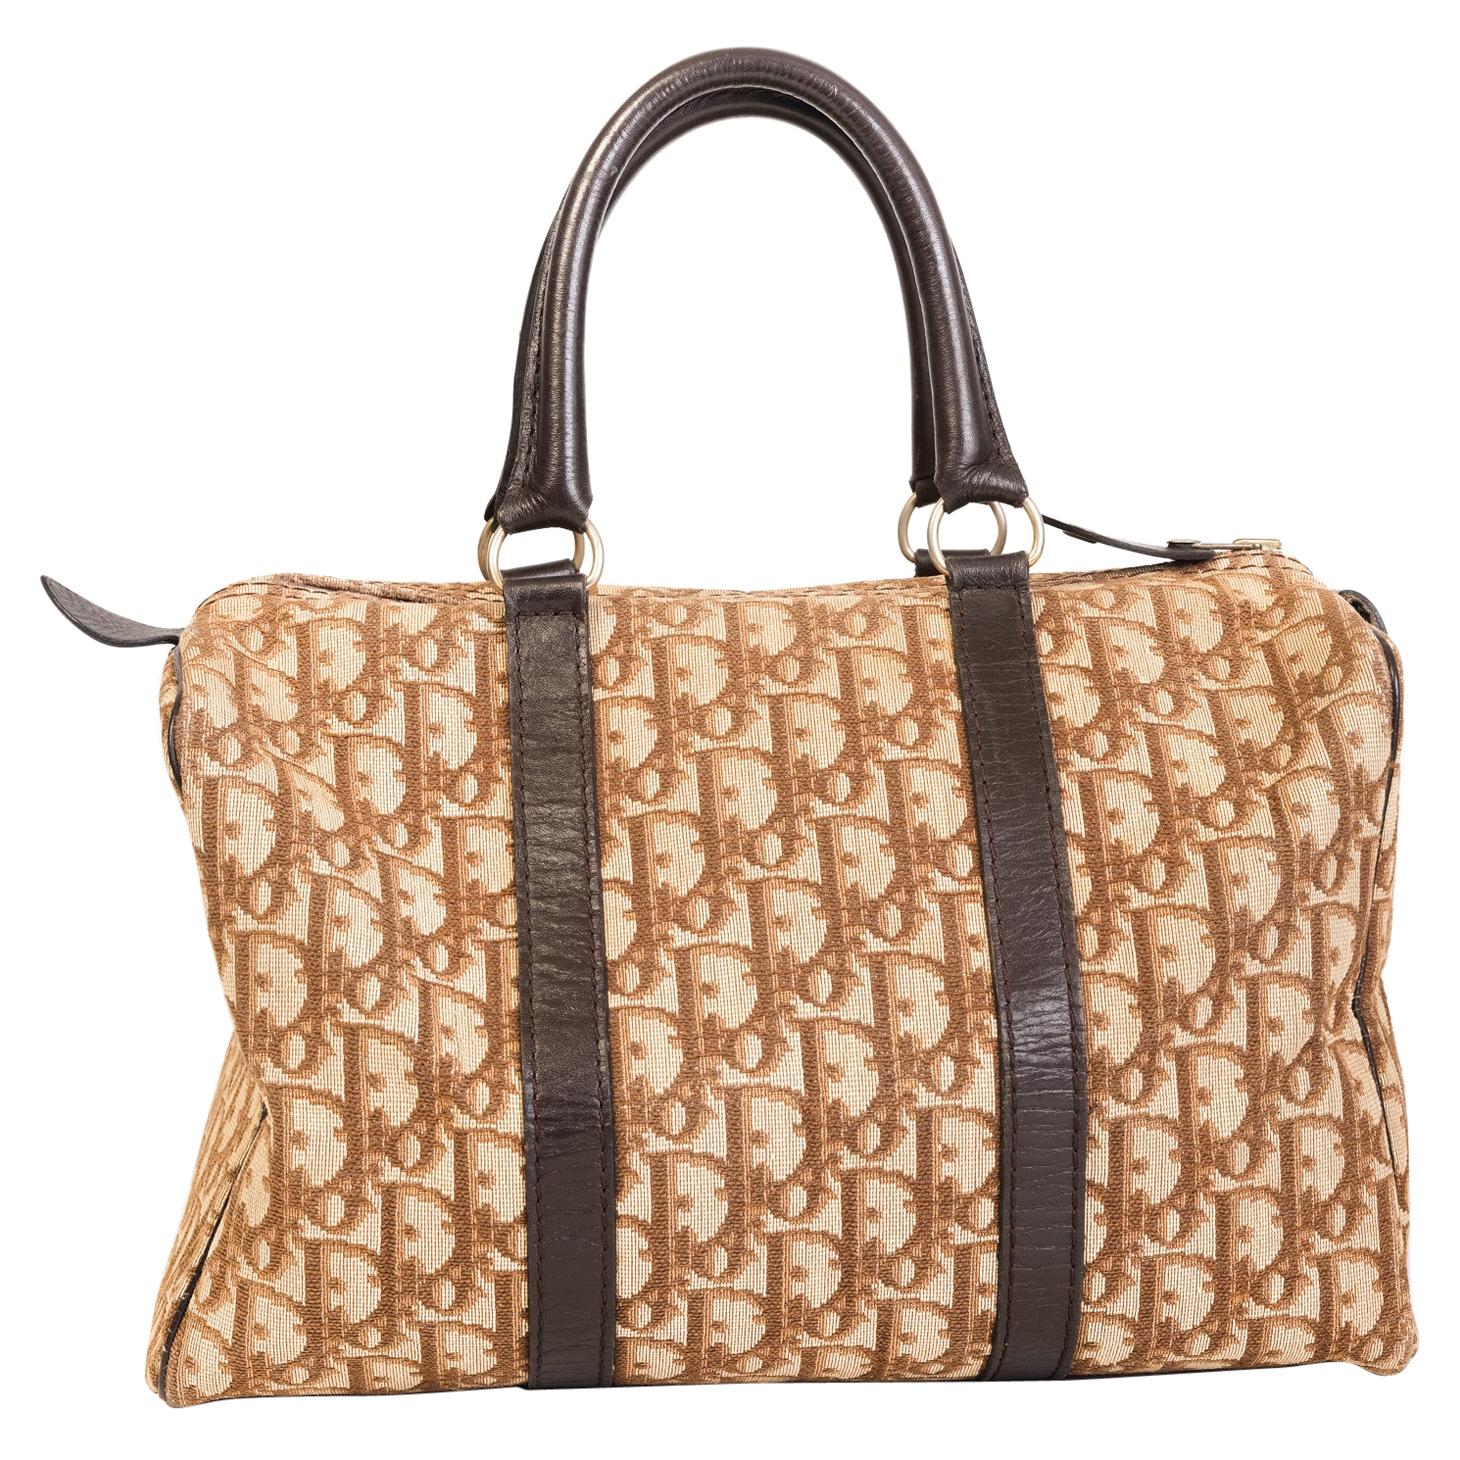 Dior Duffle Bag -32 For Sale on 1stDibs